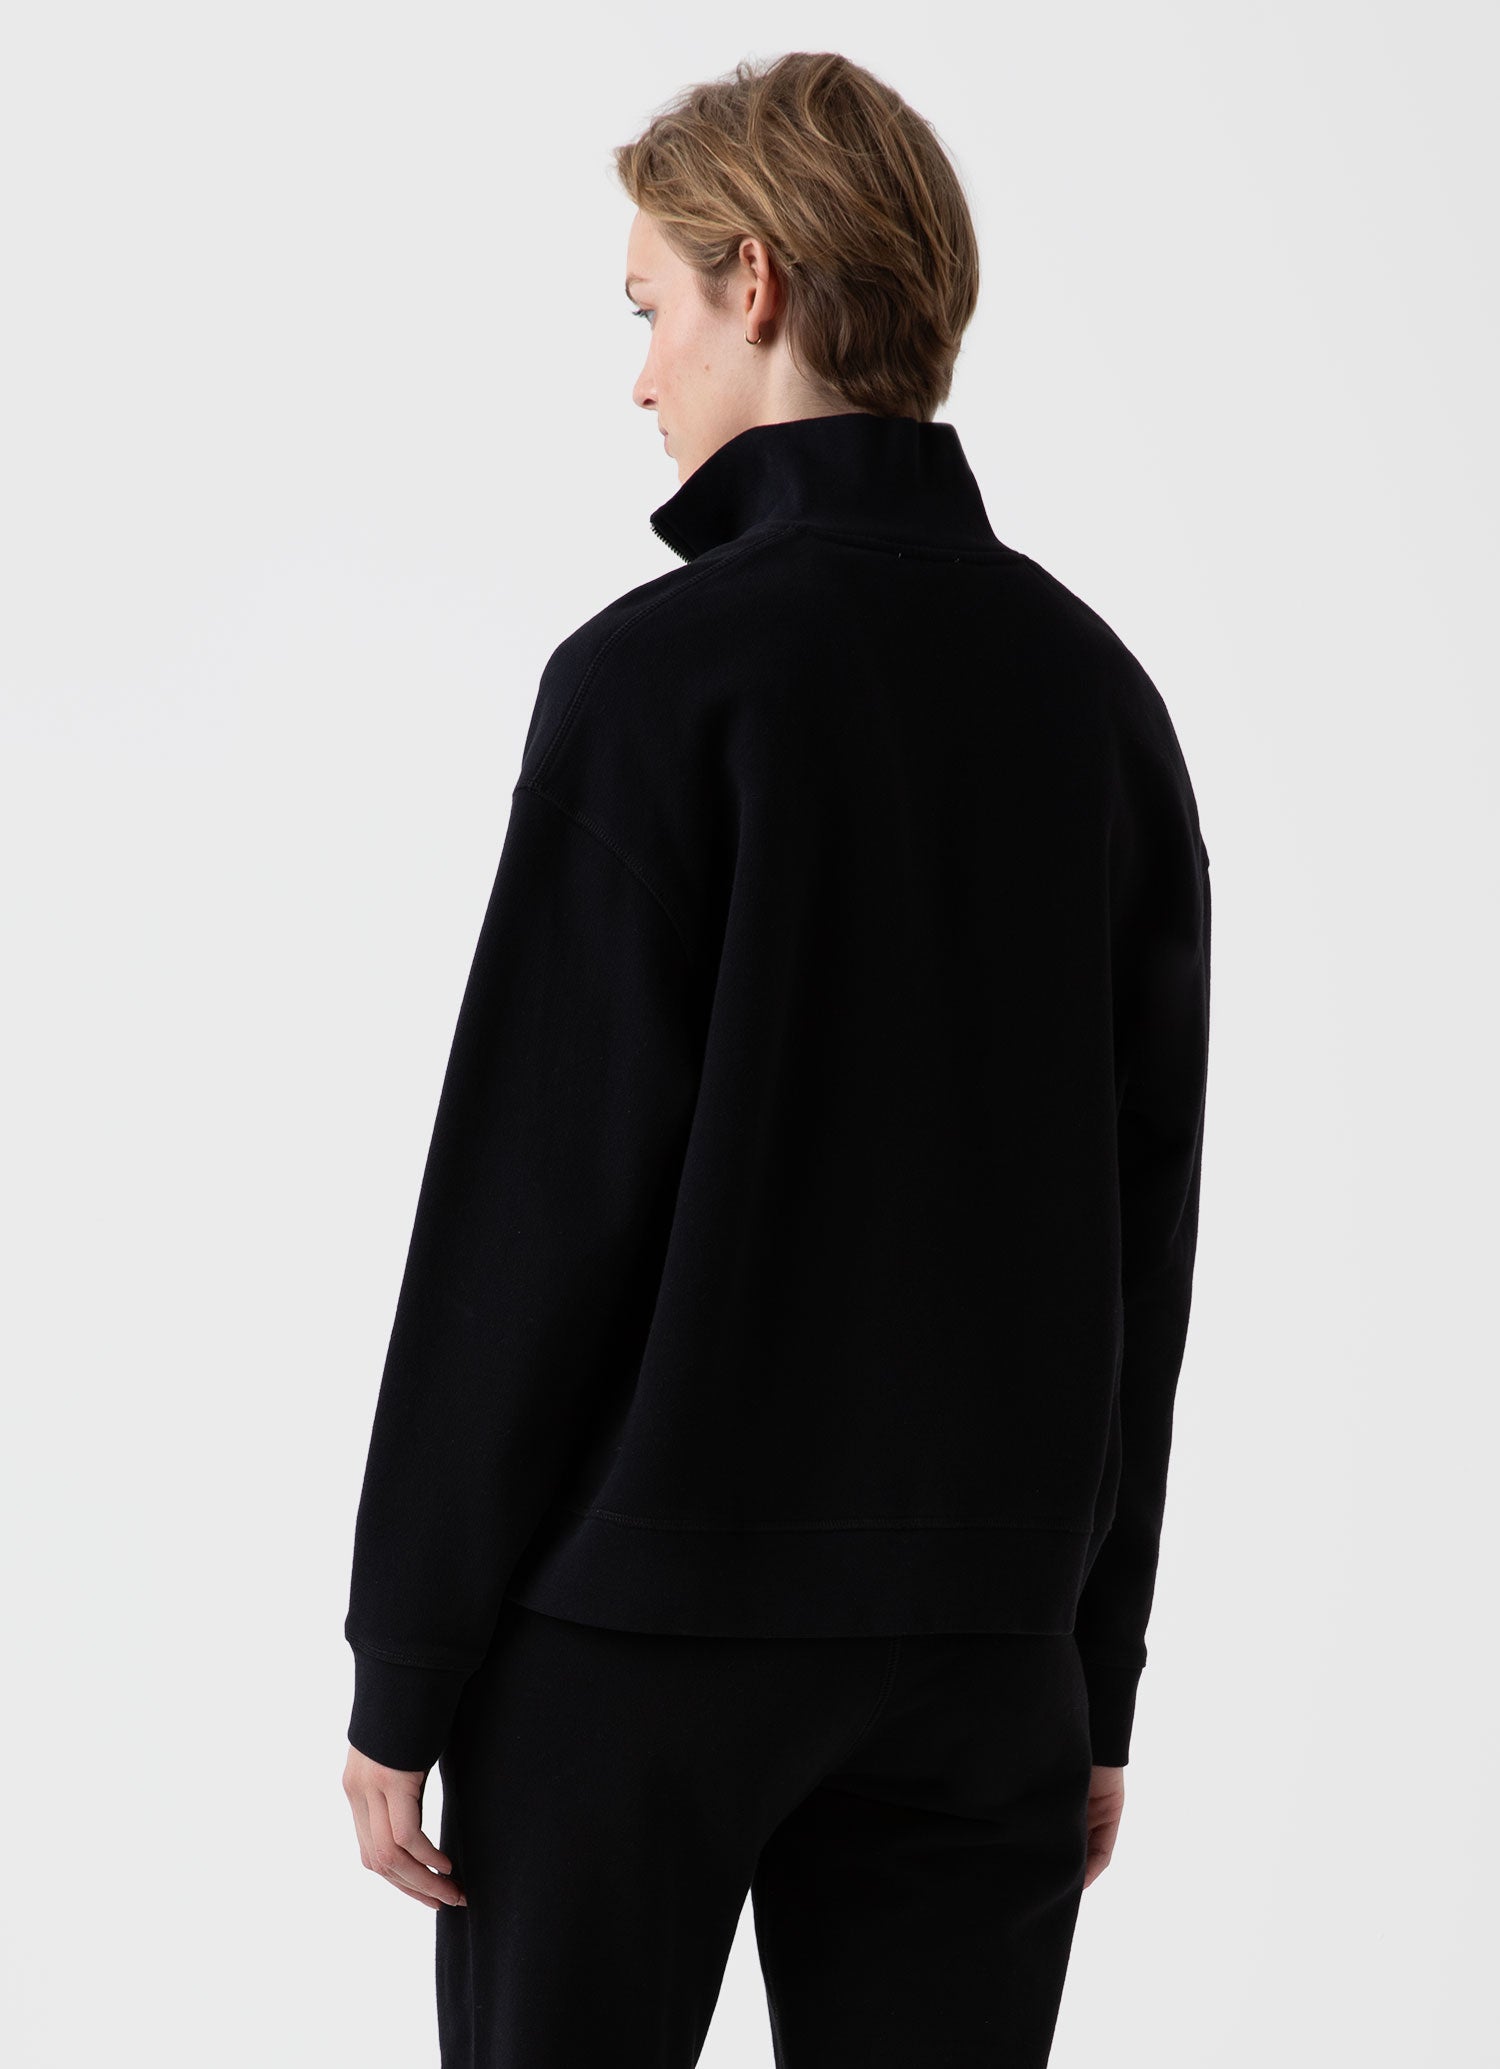 Women's Half Zip Loopback Sweatshirt in Black